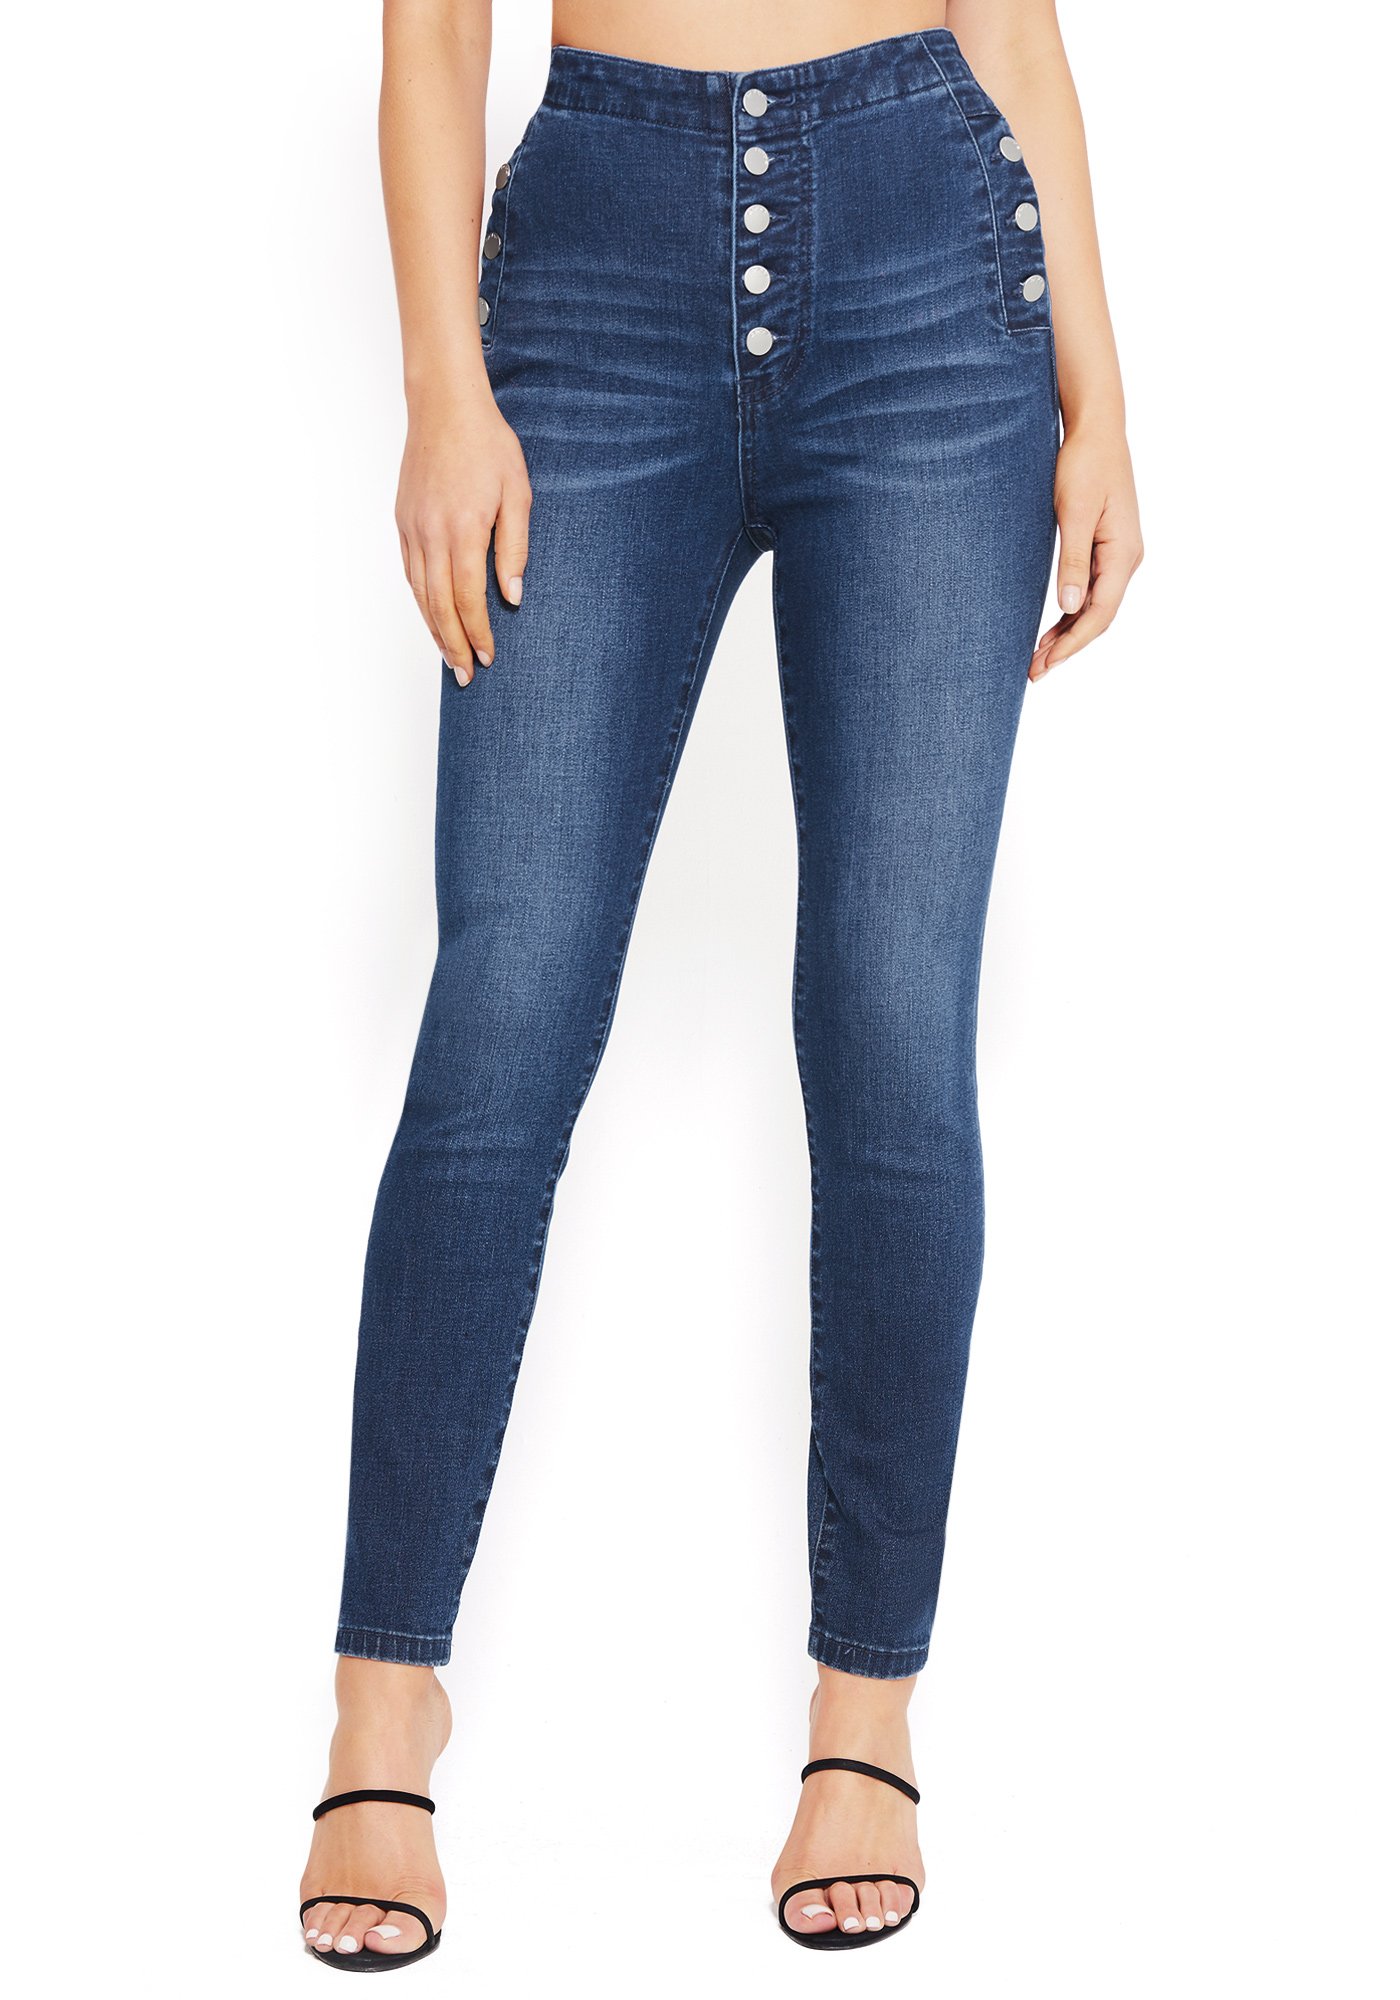 Bebe Women's Button Trim High Waist Jeans, Size 31 in Medium Wash Indigo Cotton/Spandex